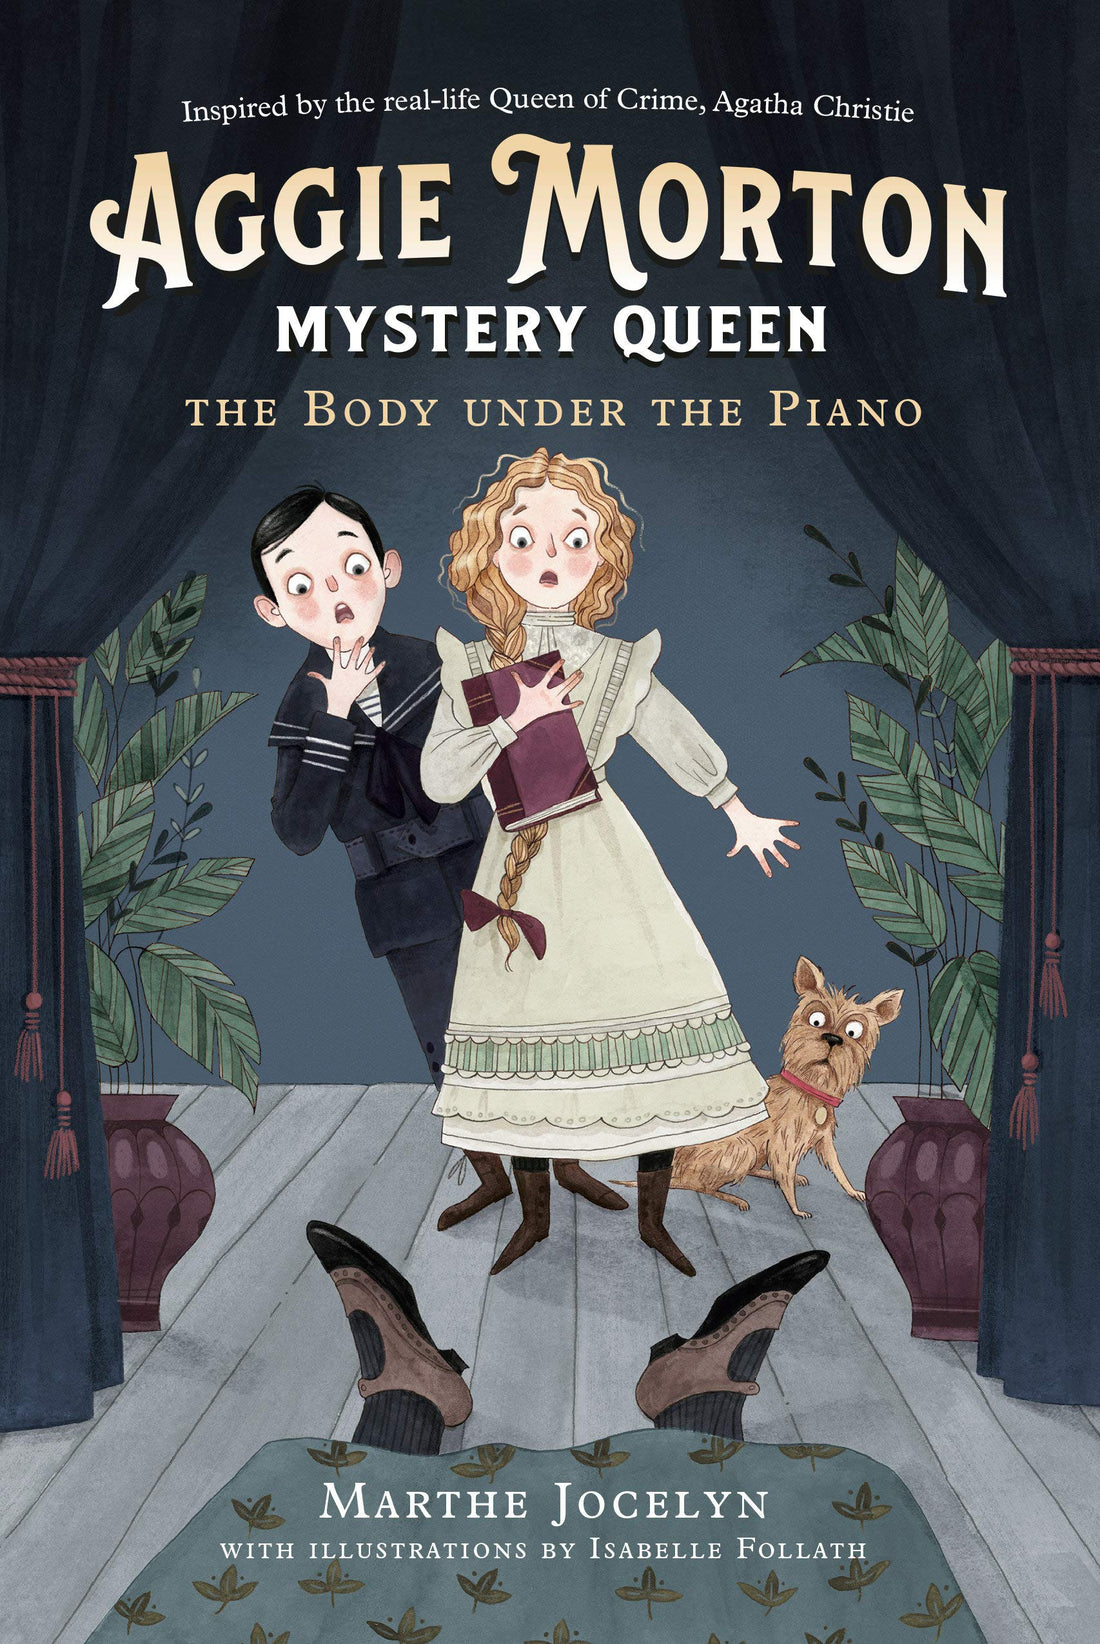 Aggie Morton Mystery Queen: The Body Under the Piano - Parkette.